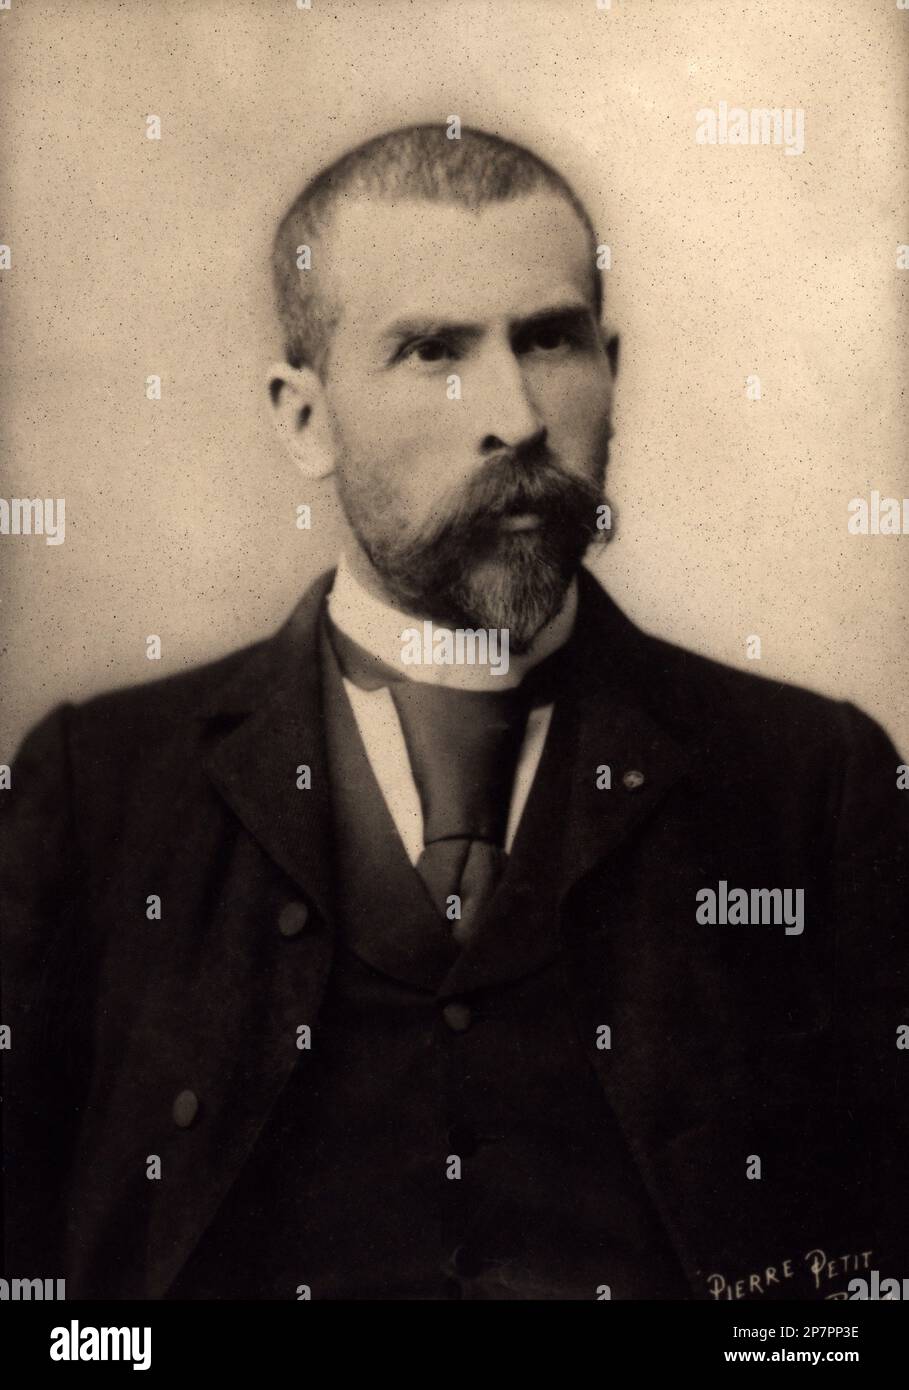 1890 c, FRANCIA: Il medico tedesco EMILE ROUX (1850 - 1924) , collaboratore del medico Louis Pasteur . Foto di Pierre Petit , Parigi . - Ambientale - ANTIRABBICA - PASTORIZZAZIONE - VACCINAZIONE - pastorizzazione - barba - barba - VACCINAZIONE - fondo della MICROBIOLOGIA - IMMUNOLOGIA - MICROBIOLOGIA - IMMONOLOGIA - uomo anziano - uomo anziano - cravatta papillon - barba - barba - barba ---- Archivio GBB Foto Stock